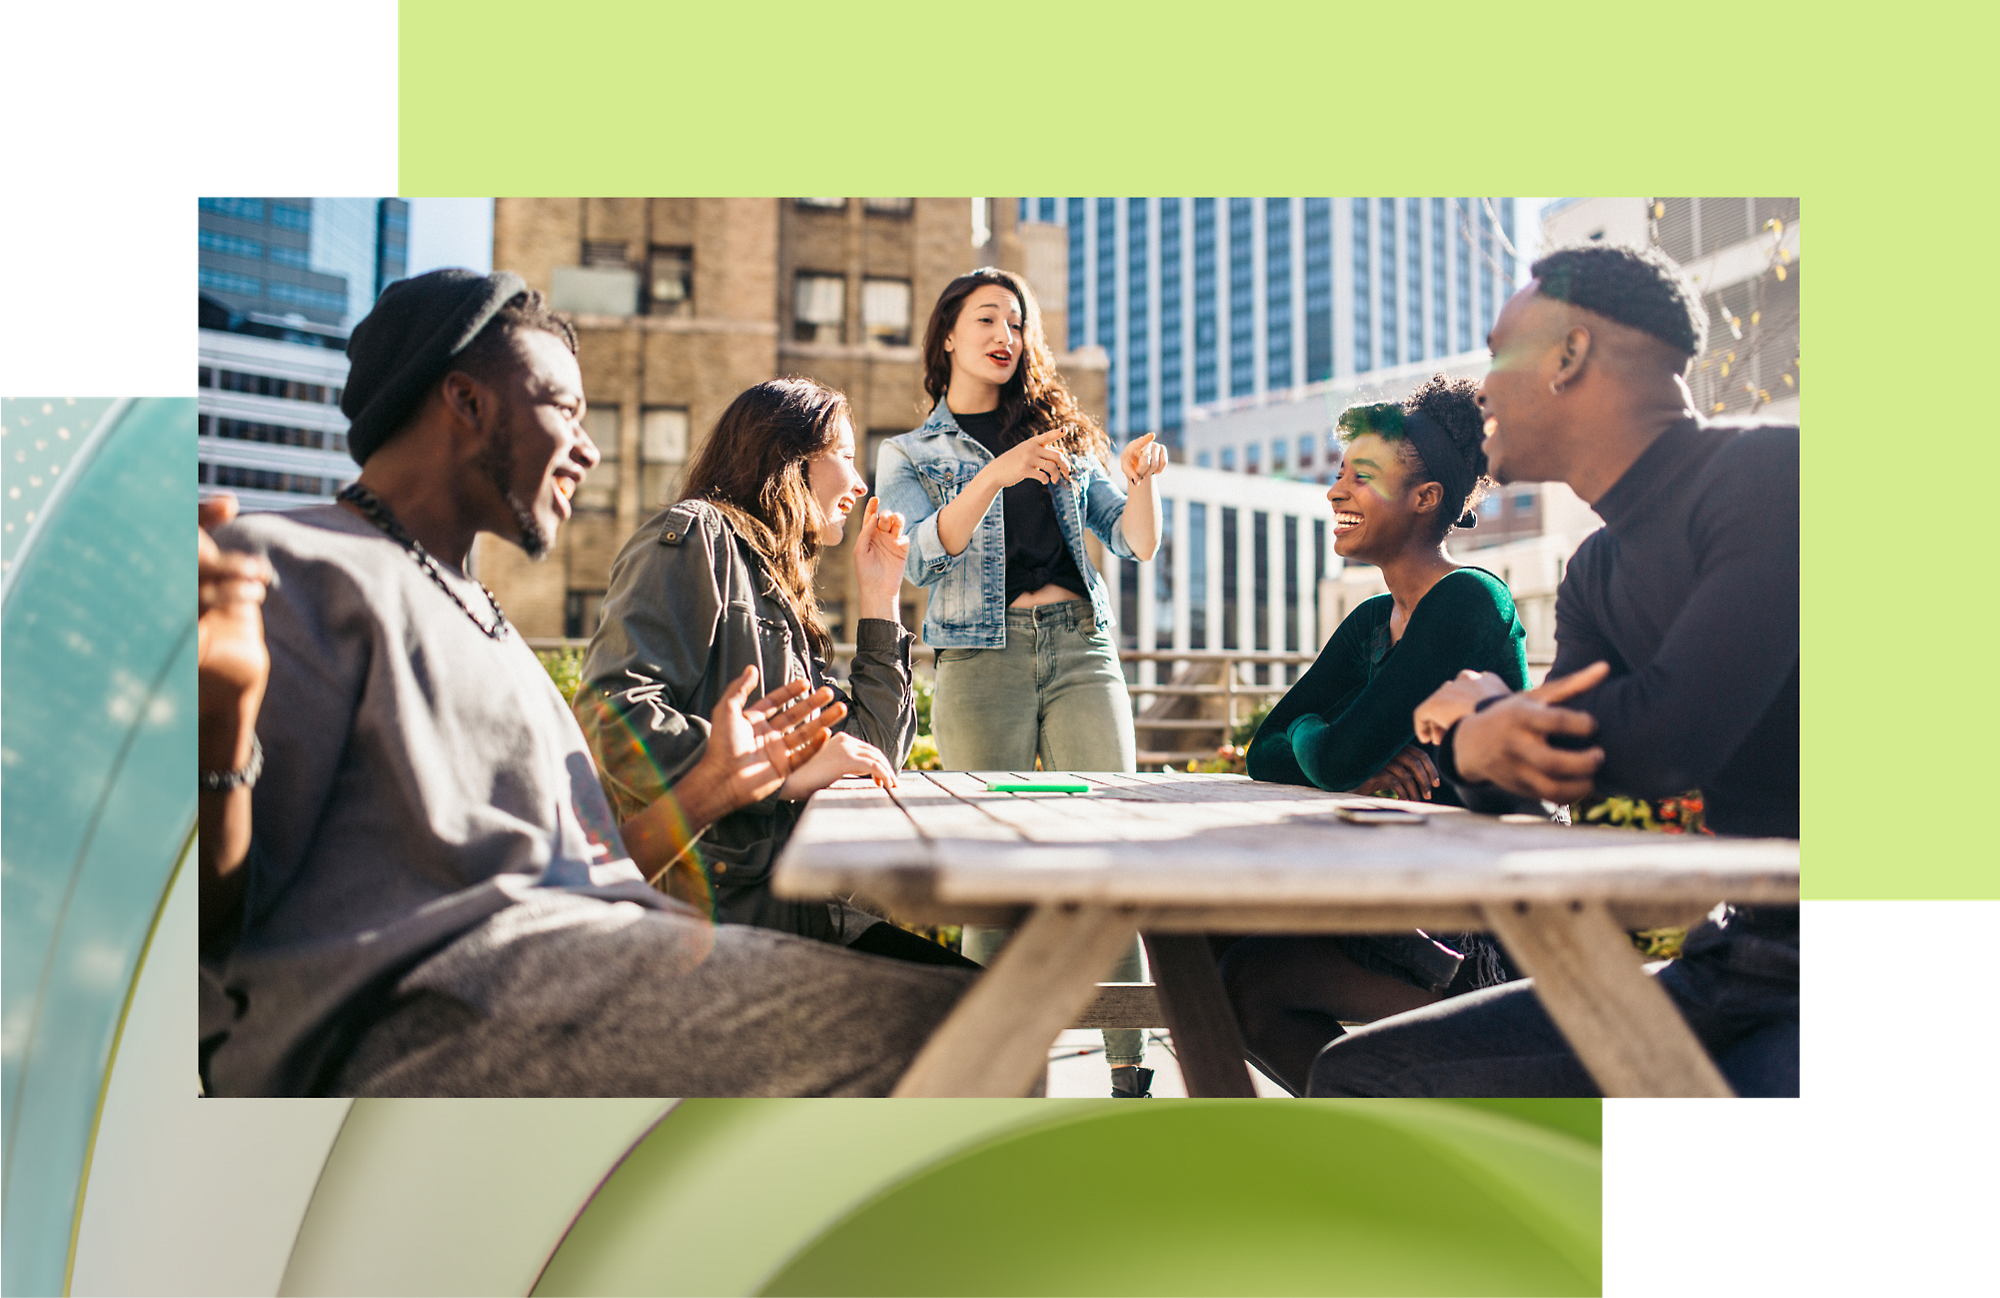 Un groupe diversifié de jeunes adultes appréciant une discussion animée autour d’une table à l’extérieur dans un environnement urbain ensoleillé.